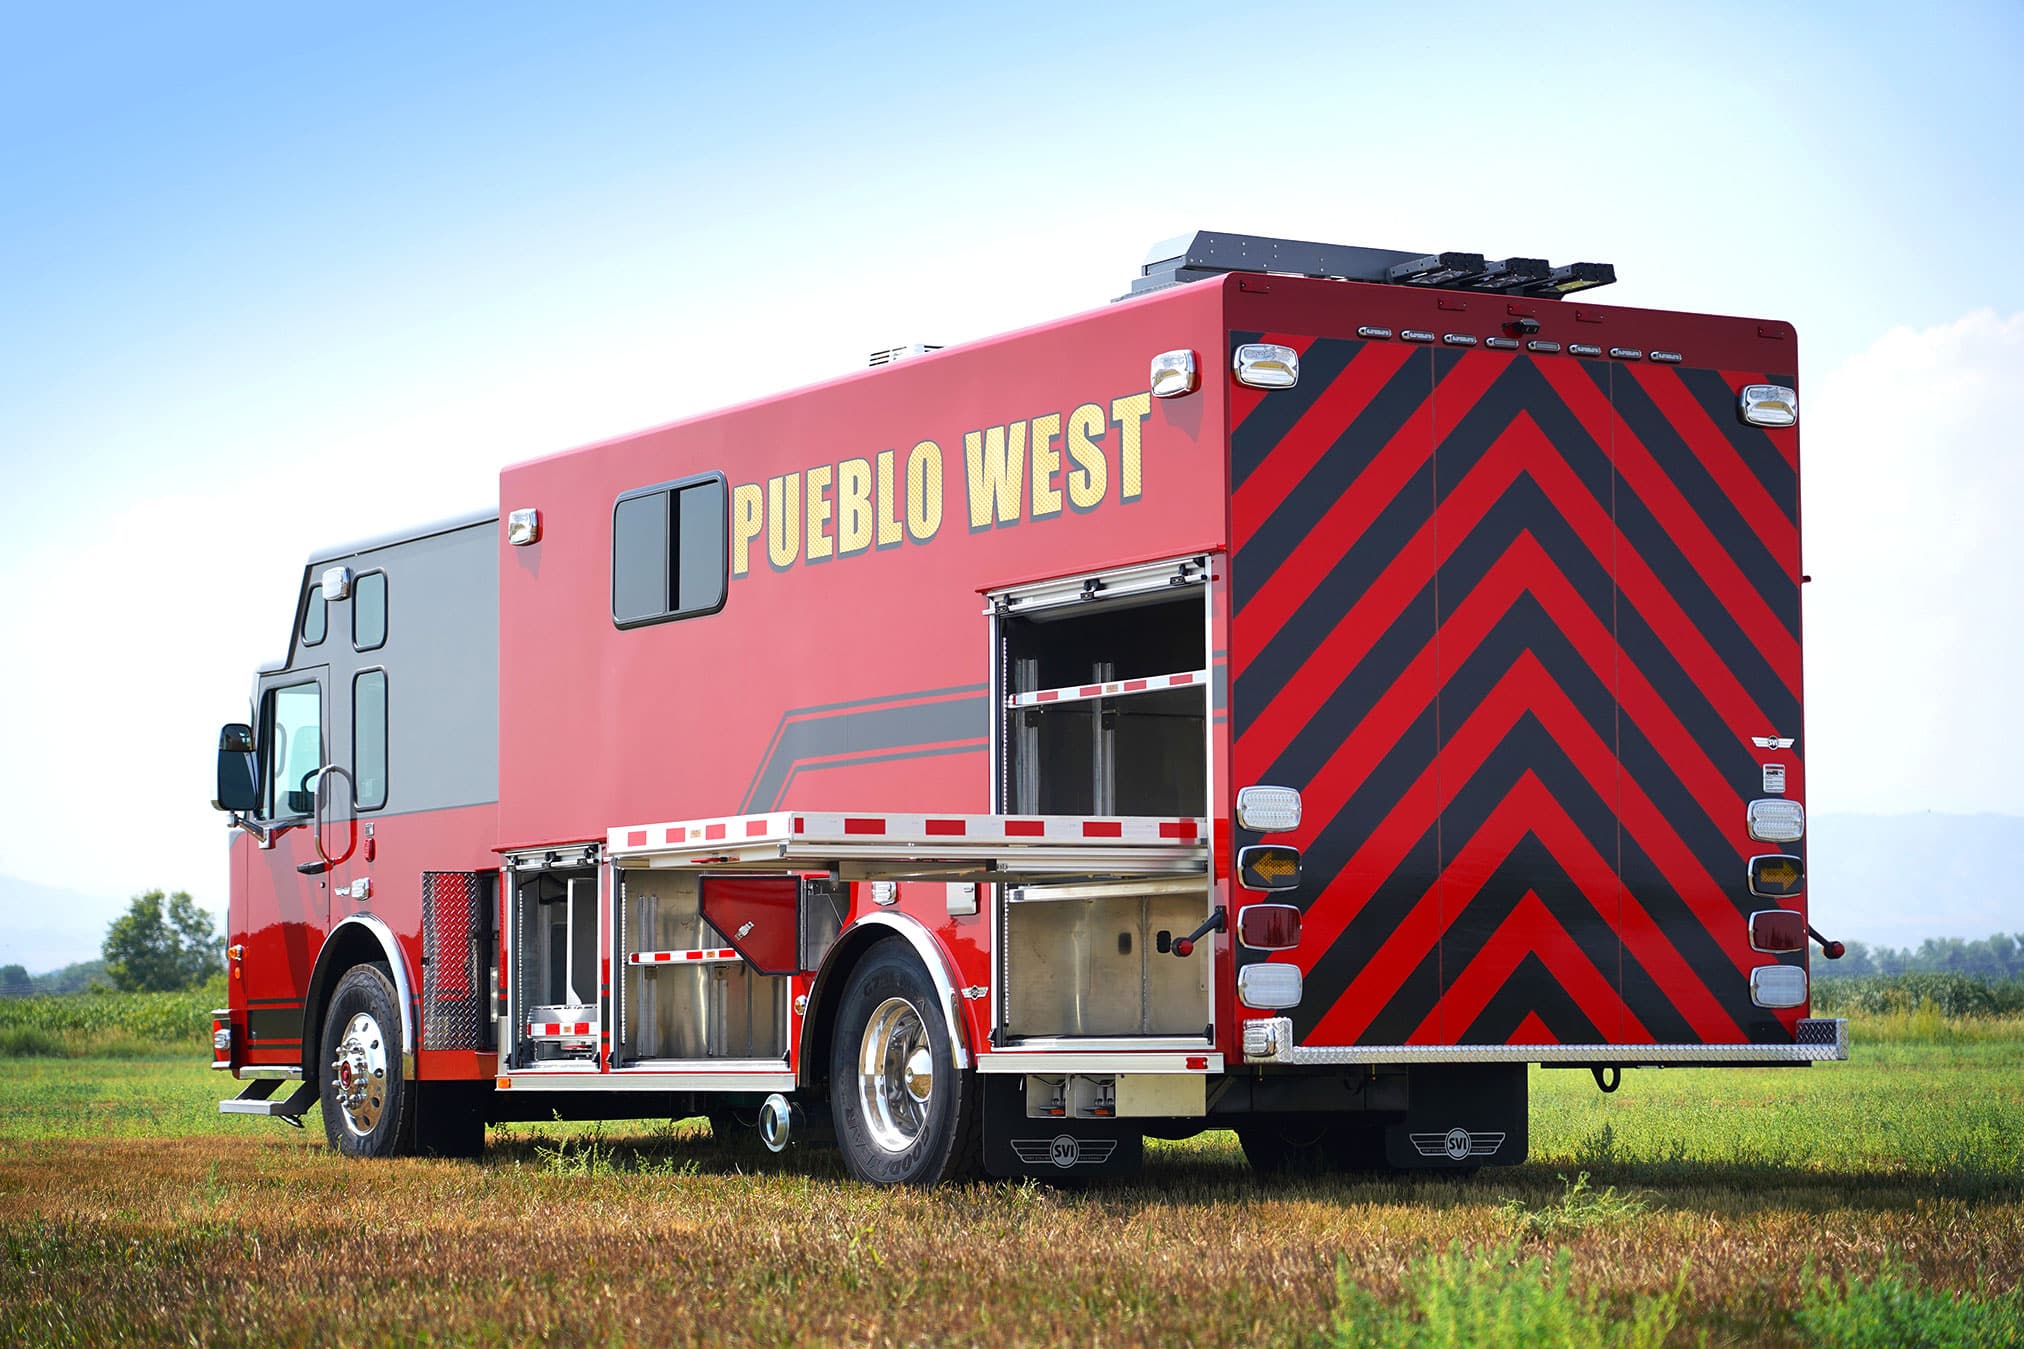 Featured image for “Pueblo West, CO Fire Department Hazmat #1057”